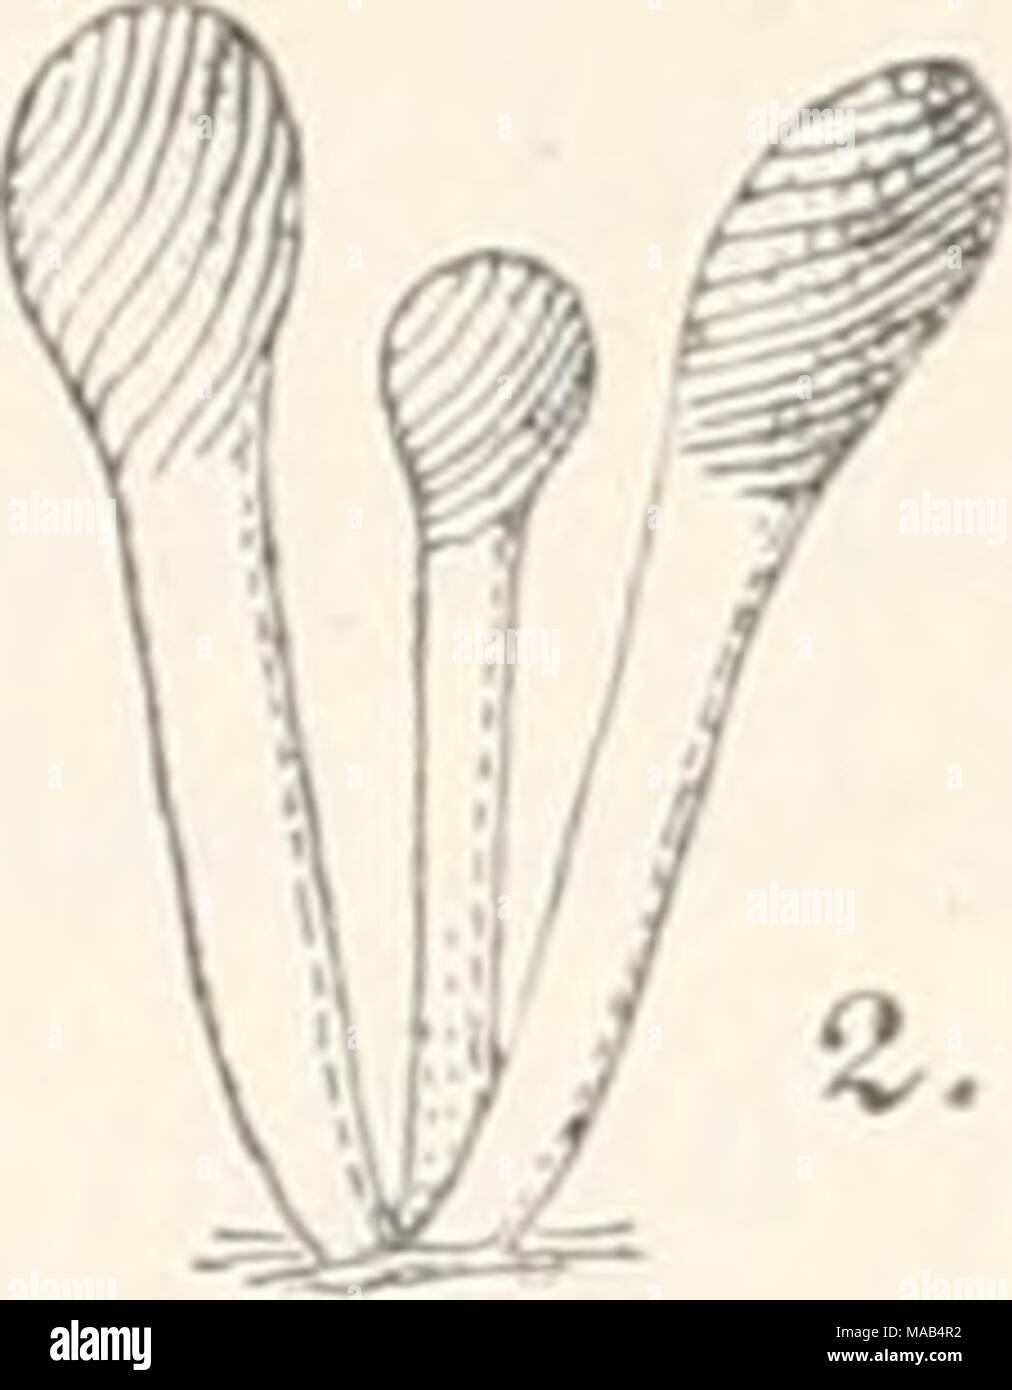 . Dr. L. Rabenhorst's Kryptogamen-Flora von Deutschland, Oesterreich und der Schweiz . n A Stilbella erythrocepbala (Ditm.). 1. Koremium, sehr stark vergr. 2. Koremien, wenig vergr. 3. Konidieuträger mit Konidien, stark vergr. (Nach Saccardo.) 2174. S. villosa (Bull.). Syn. Mucor villosus Bull. Champ. France Tab. 504 Fig. 15 (1790). Stilbum villosum Merat Flore paris. Crypt. I, 18 (1847). — Fries Syst. myc. III, 301. — Marchai in Bull. Suc. roy. Belg. XXIII, 2 p. 93 (1884). — Sacc. Syll. IV, 567. — De Wiid. et Dur. Prodr. Fl. Belg. II, 3.53. Stock Photo